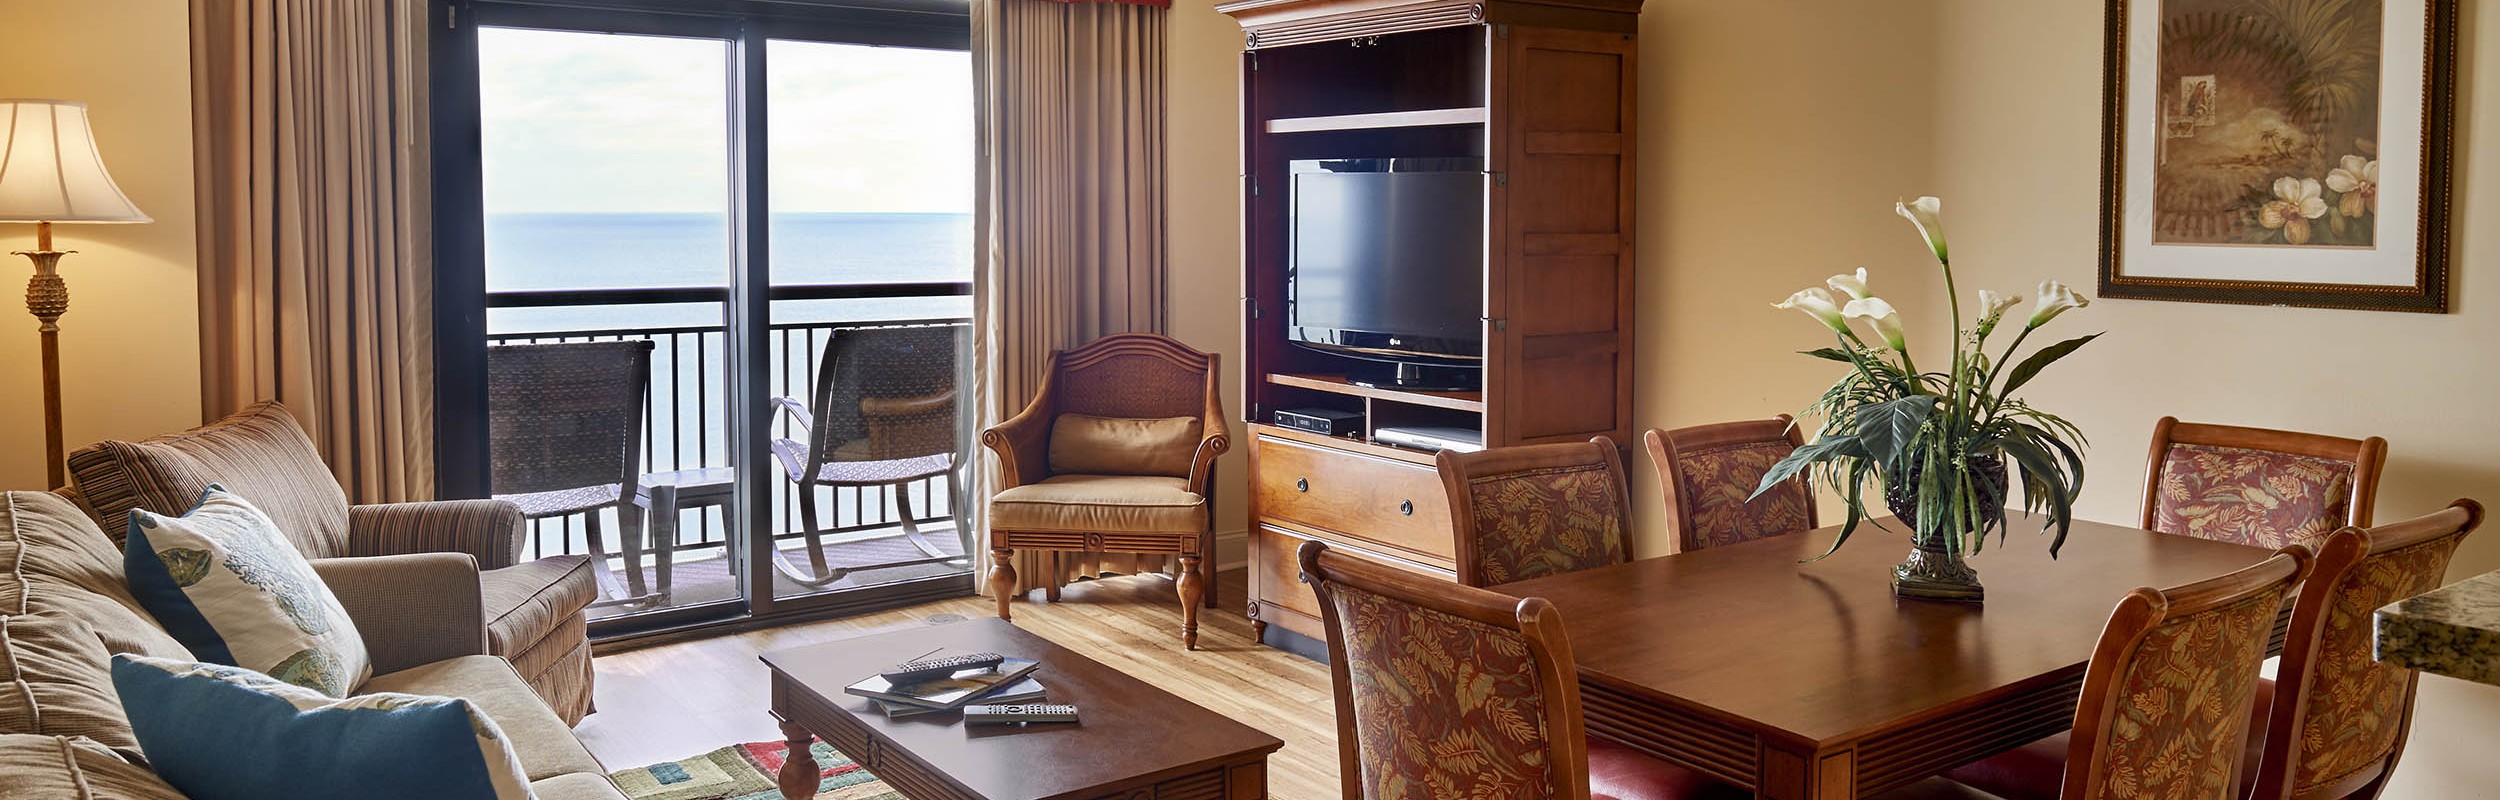 2 Bedroom Resort Suites At Island Vista Resort Top Rates Suites